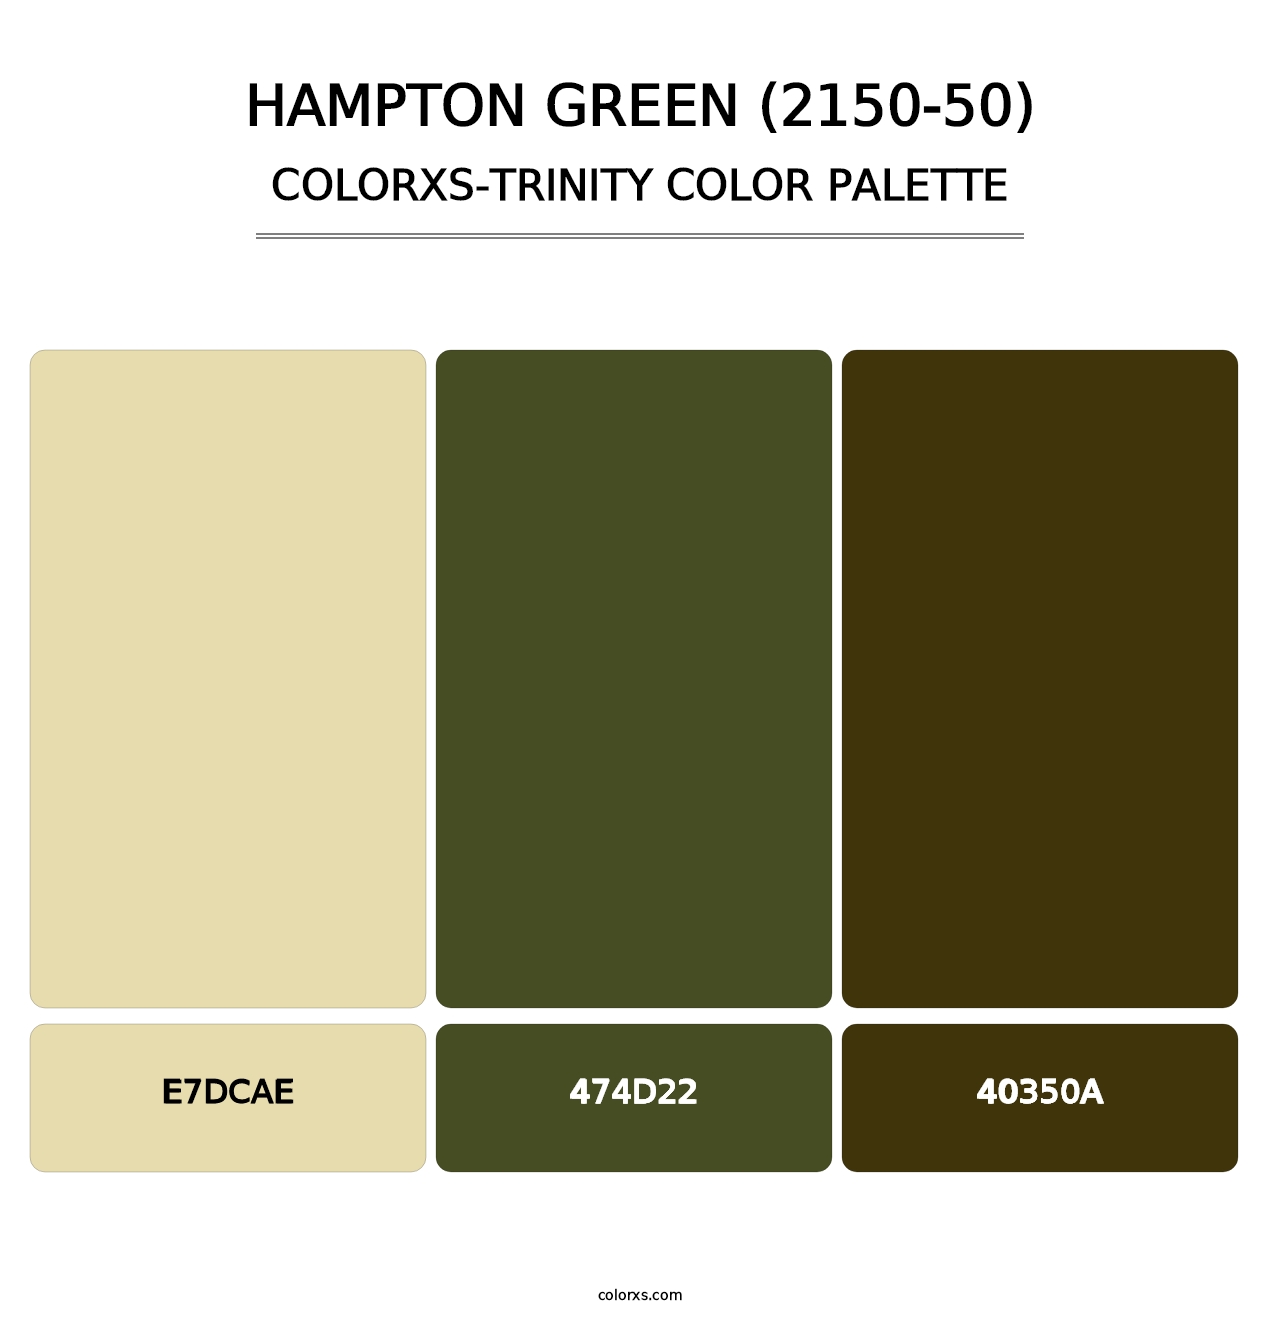 Hampton Green (2150-50) - Colorxs Trinity Palette